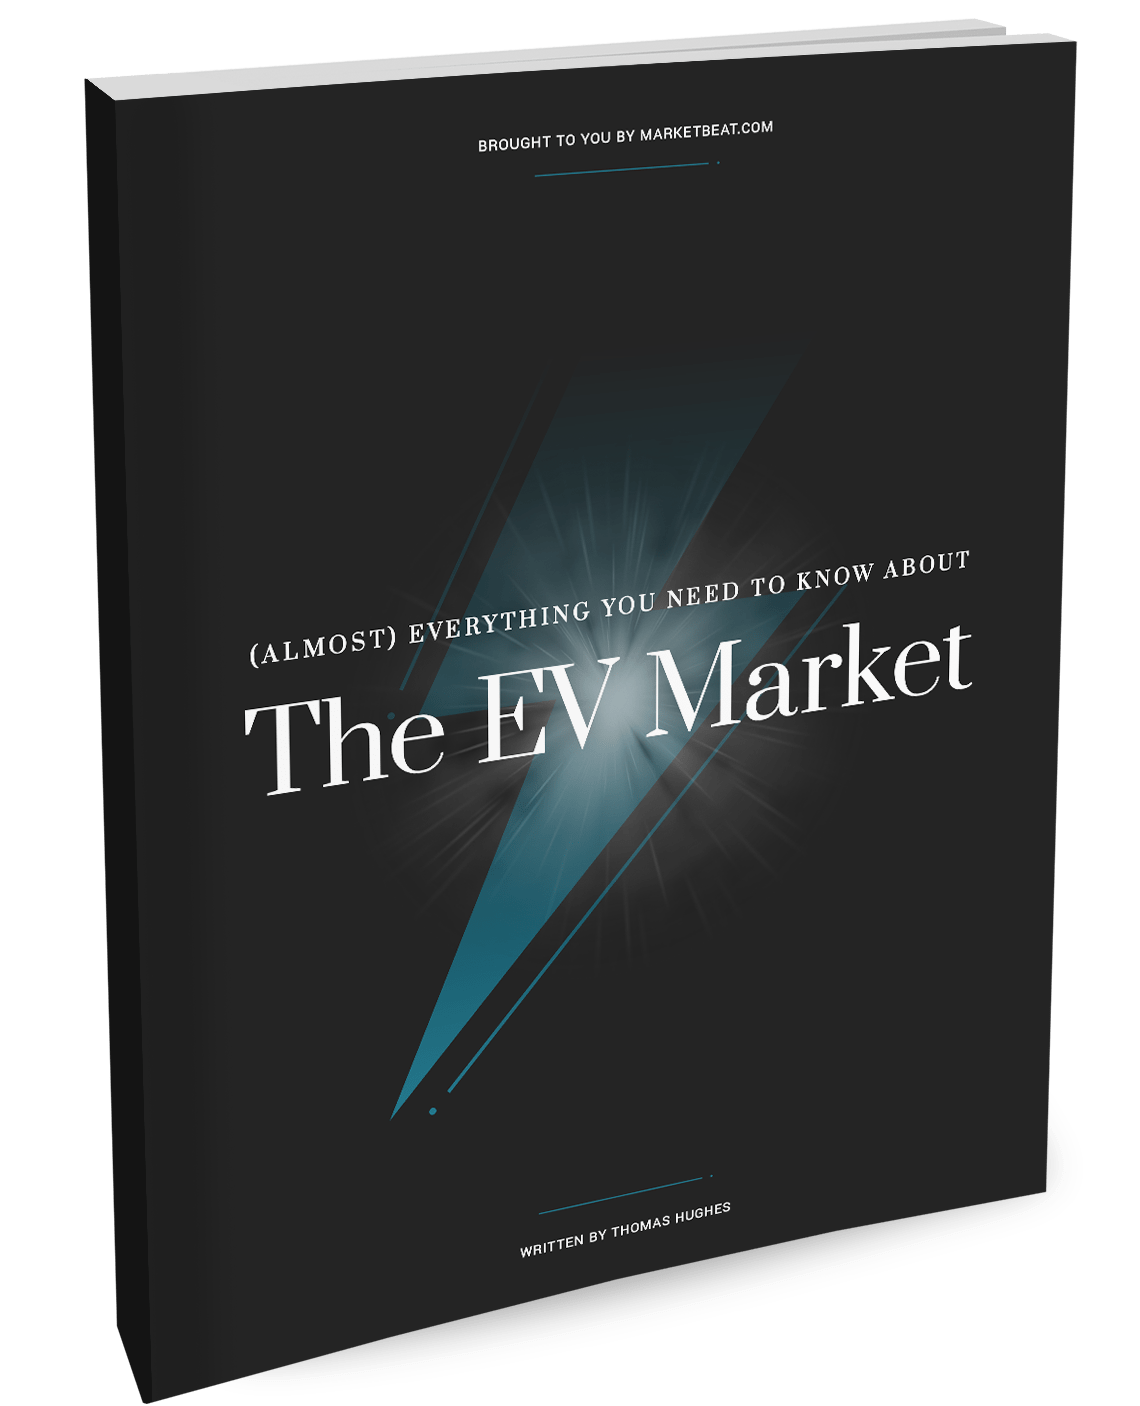 (เกือบ) ทุกสิ่งที่คุณต้องรู้เกี่ยวกับการครอบคลุมตลาด EV